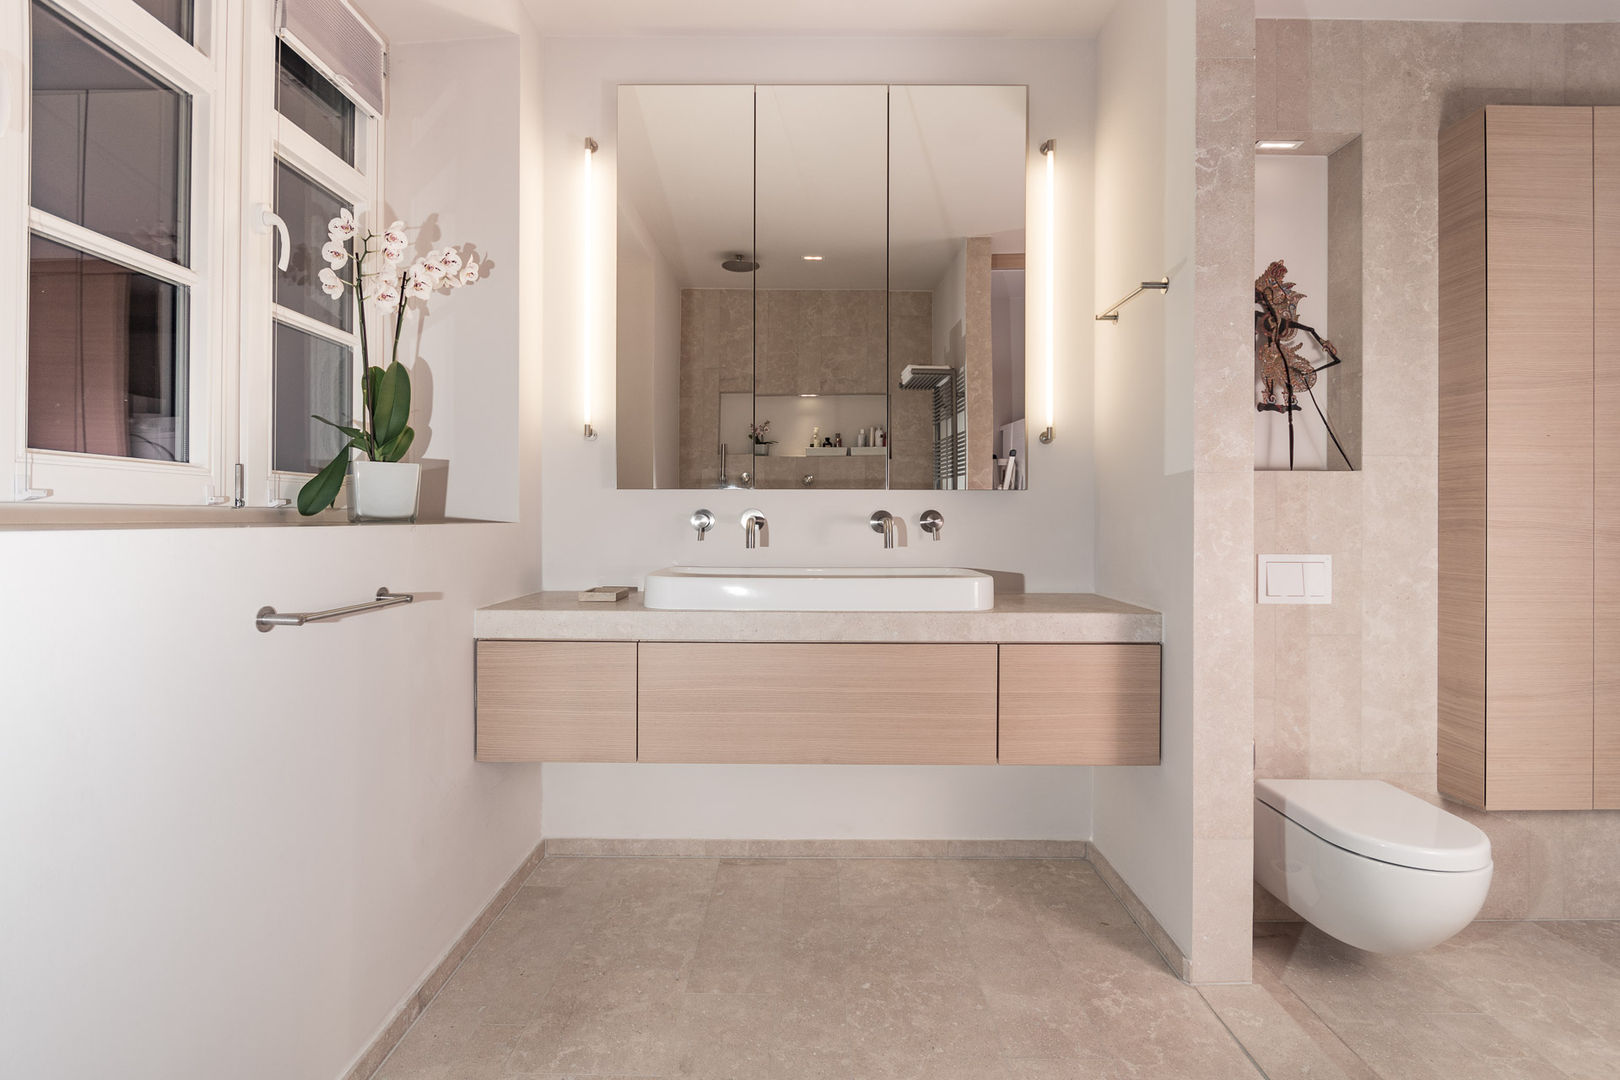 ทันสมัย โดย Vivante, โมเดิร์น bathroom,basin,interior,design,basin